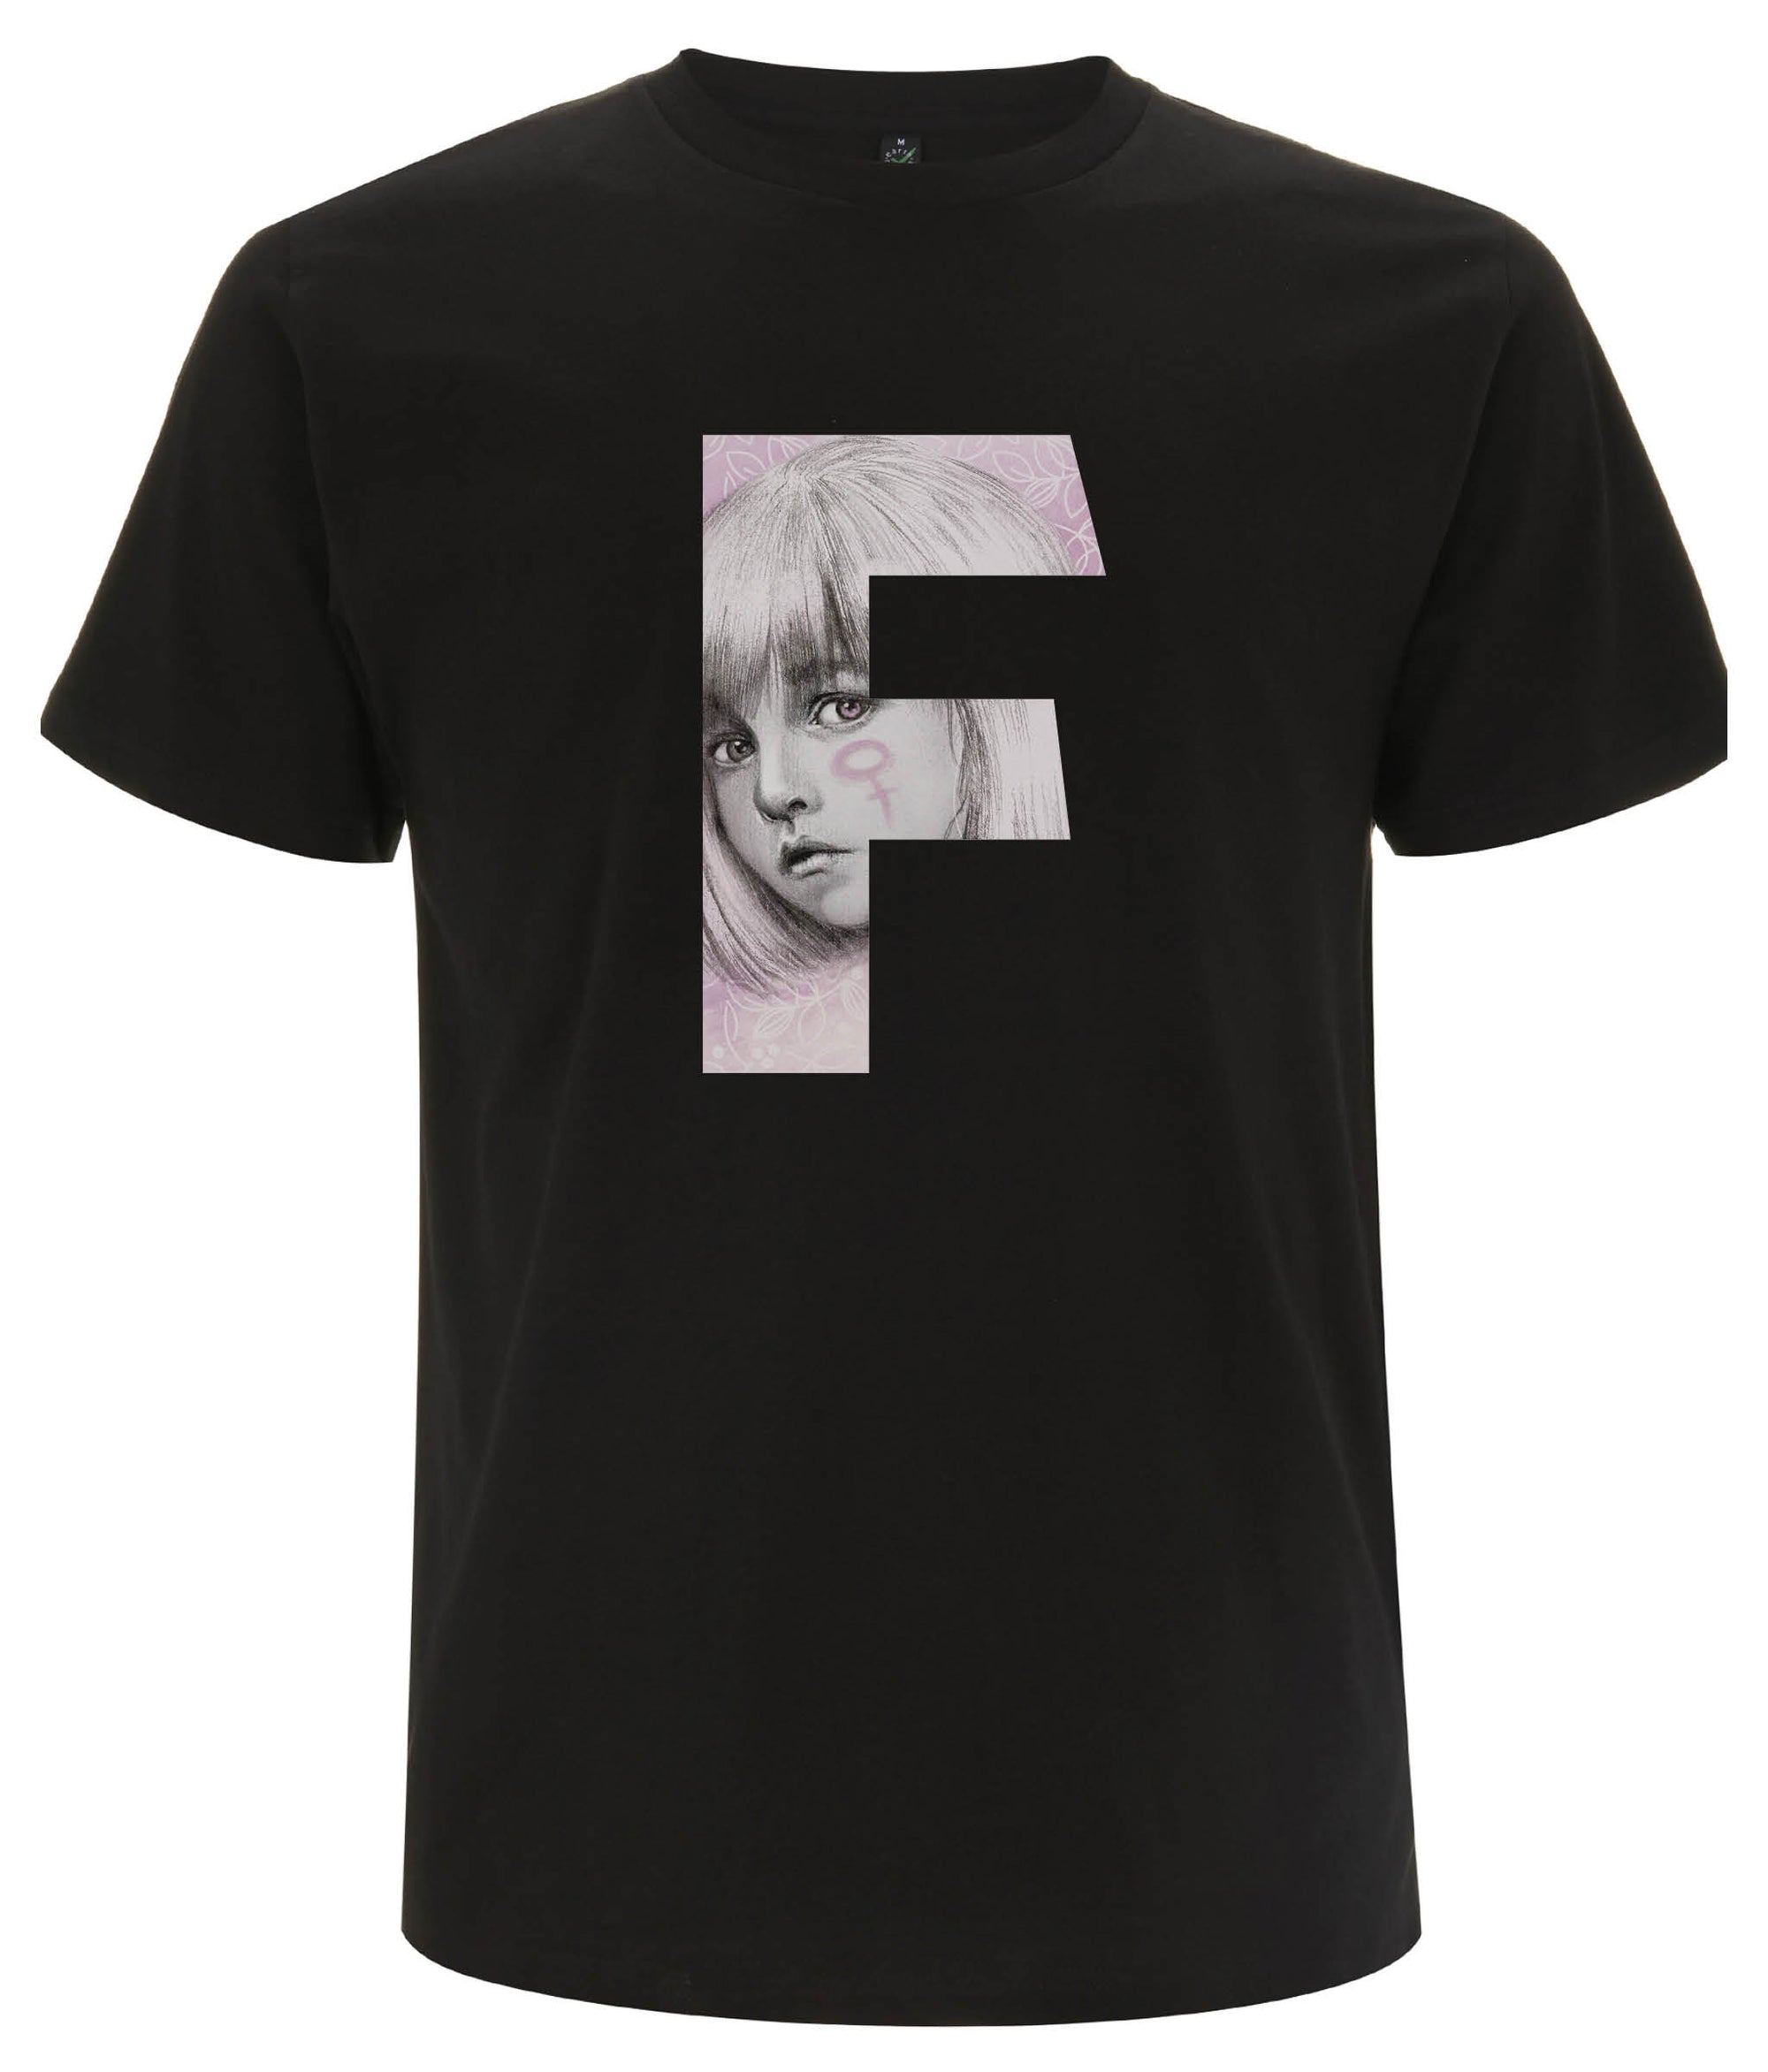 F For Her Organic Feminist T Shirt Black